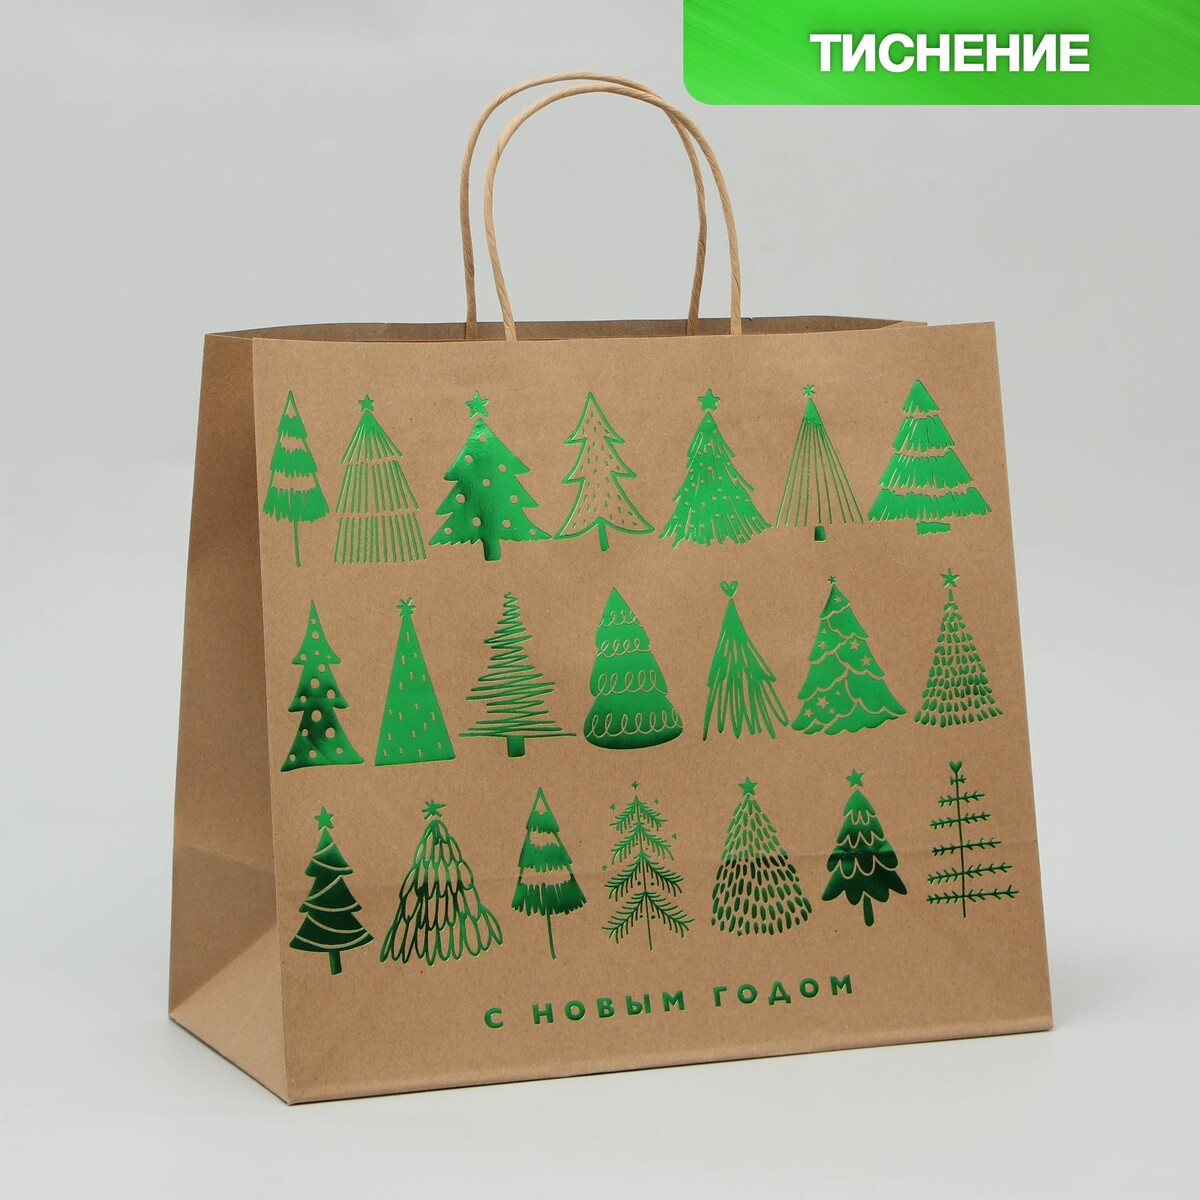 Пакет подарочный крафтовый forest, 32 х 28 х 15 см, новый год